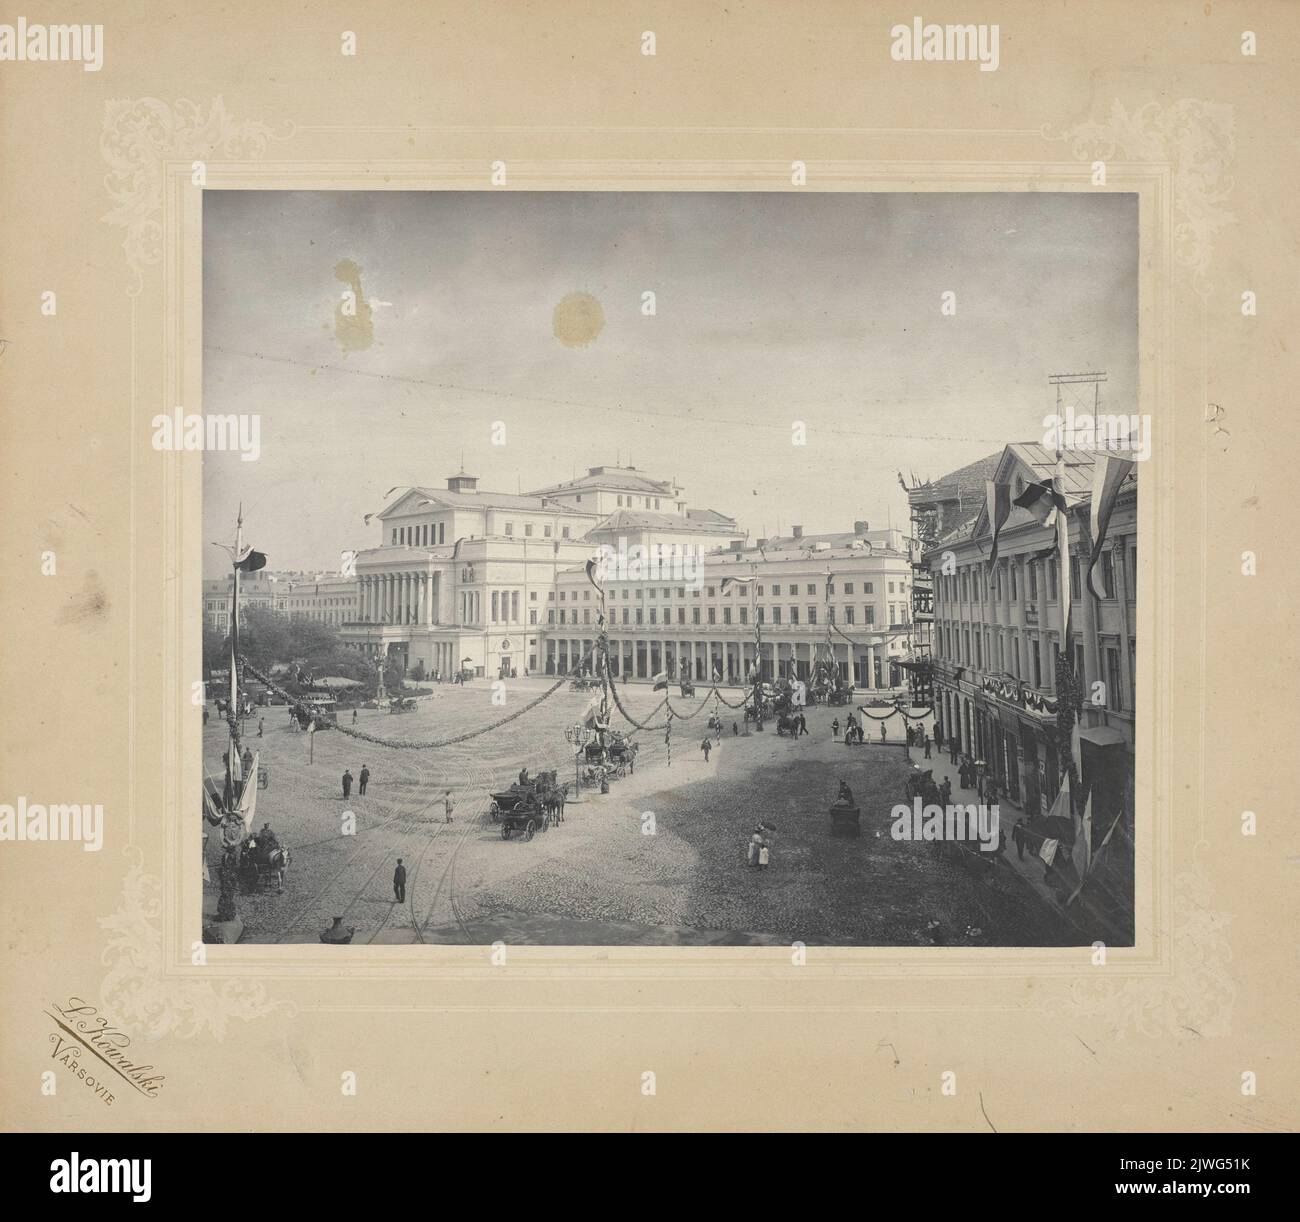 Warszawa. Plac Teatralny przygotowany na powitanie cara Mikołaja II. Kowalski, Leonard (?-1917), photographer Stock Photo